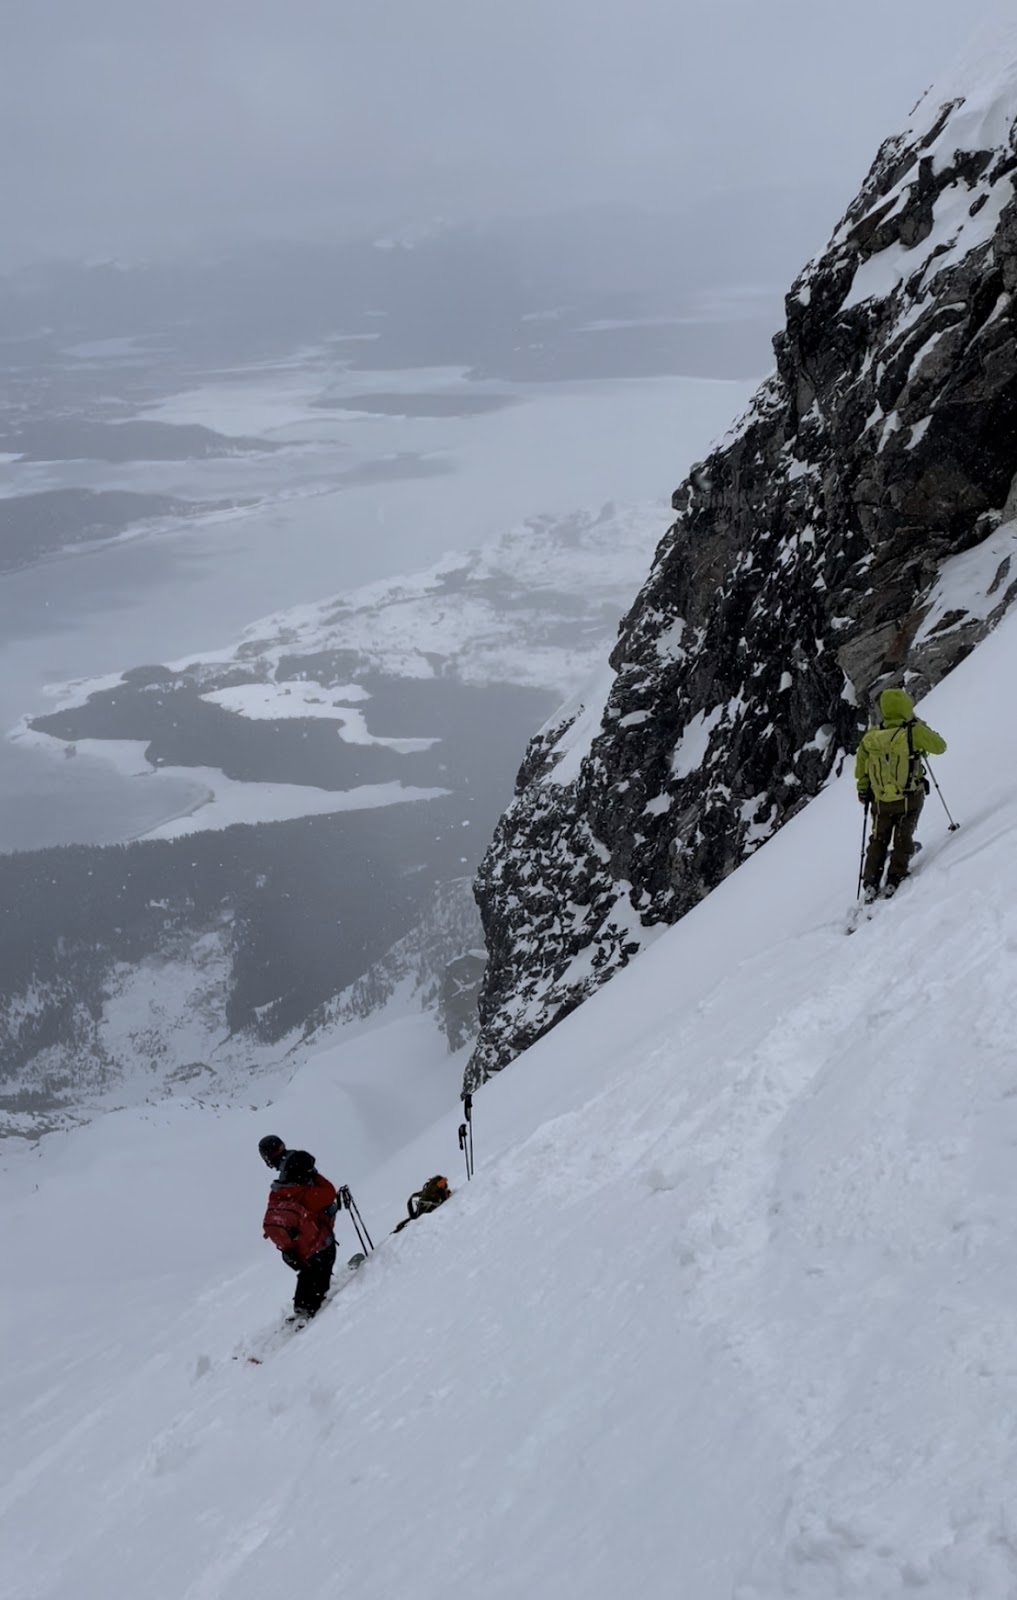 Part II: Mt. Moran's Skillet Ski Descent – Trip Report